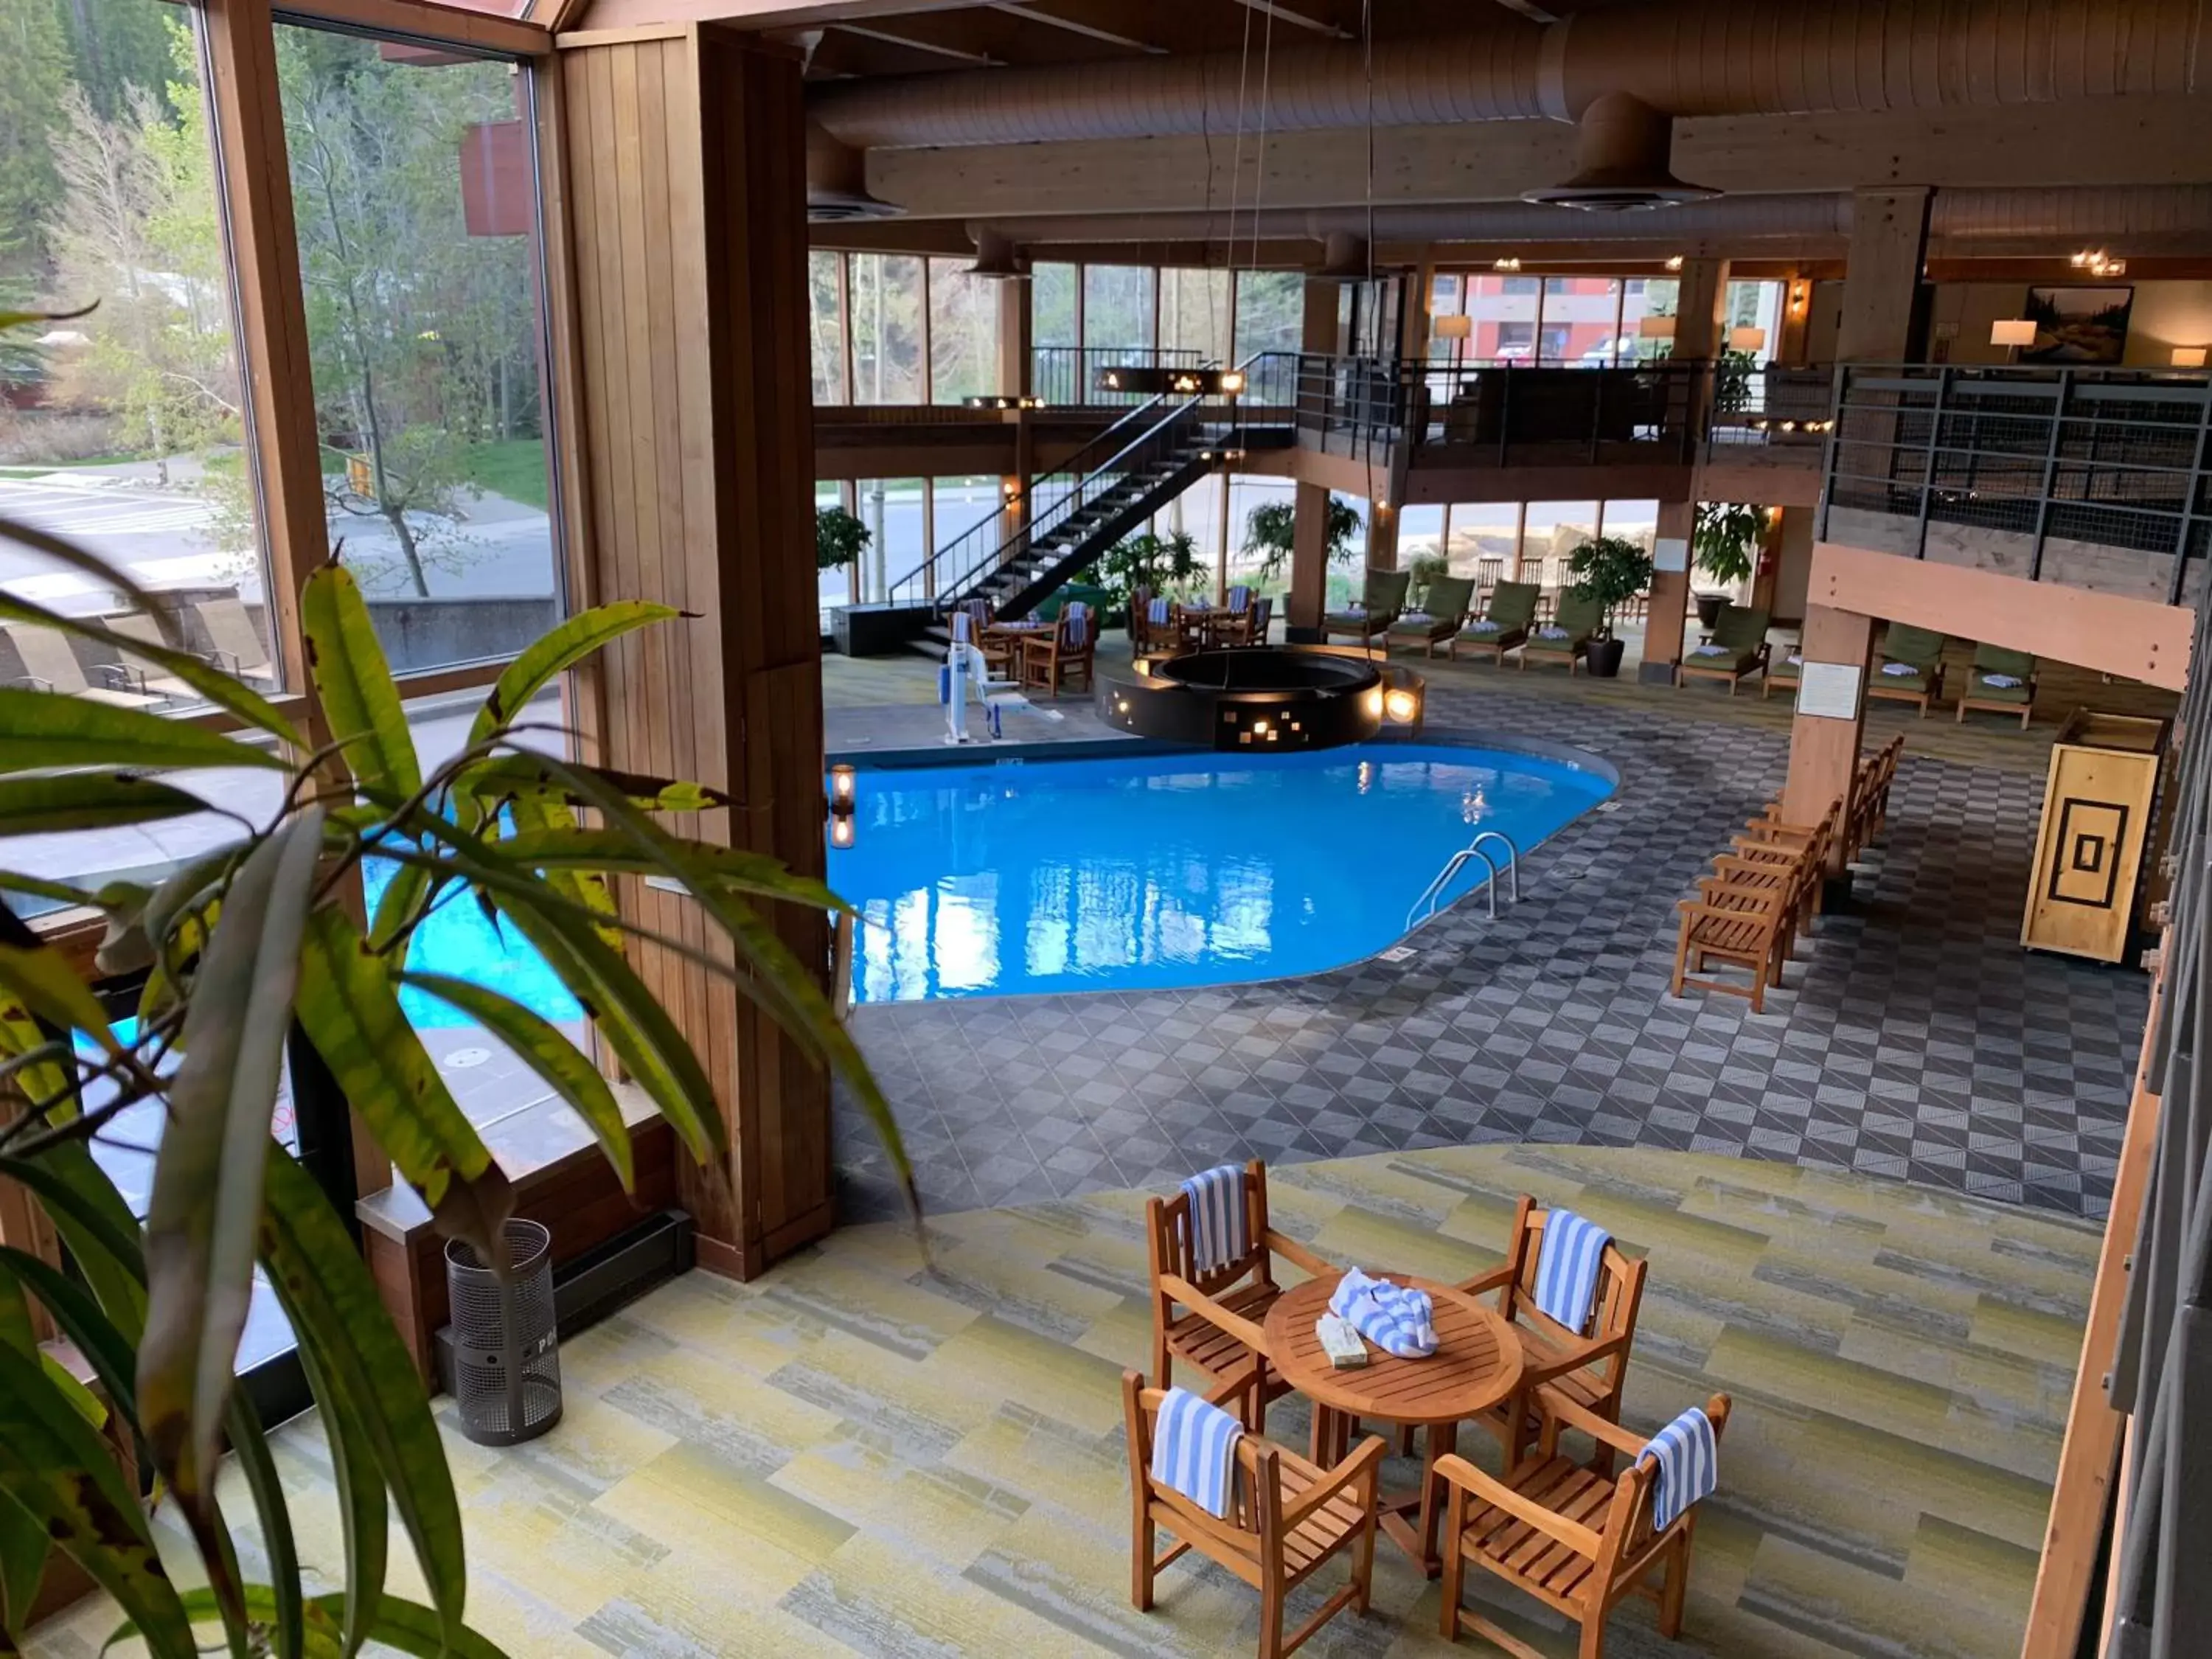 Swimming pool in Beaver Run Resort